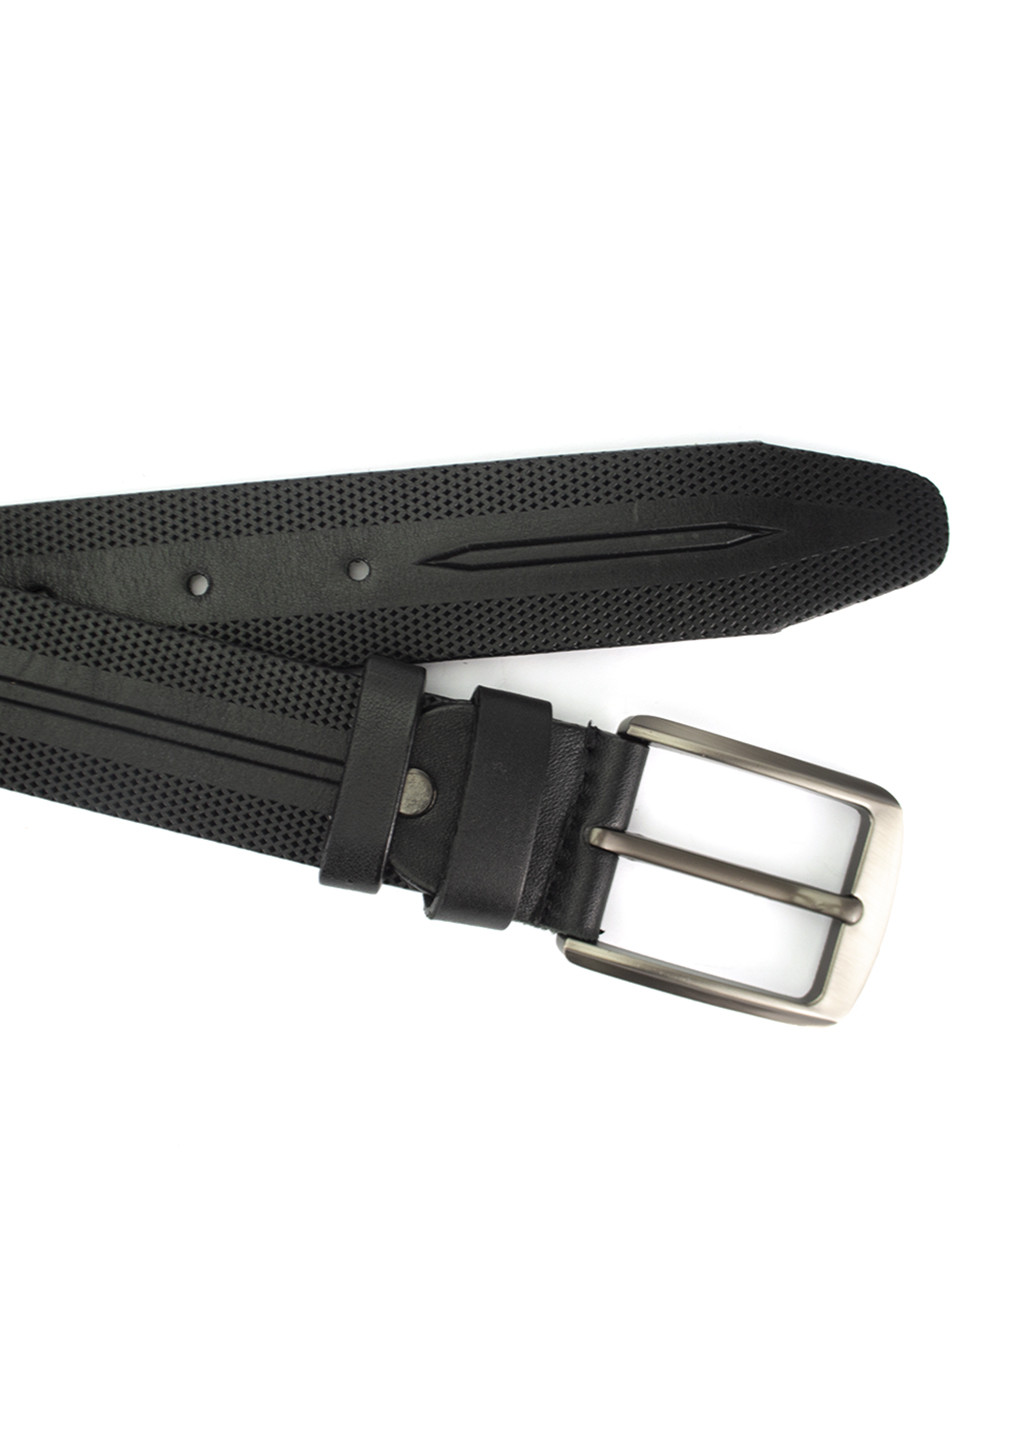 Ремень кожаный мужской черный с узором PS-3516 (120 см) Puos (250451437)